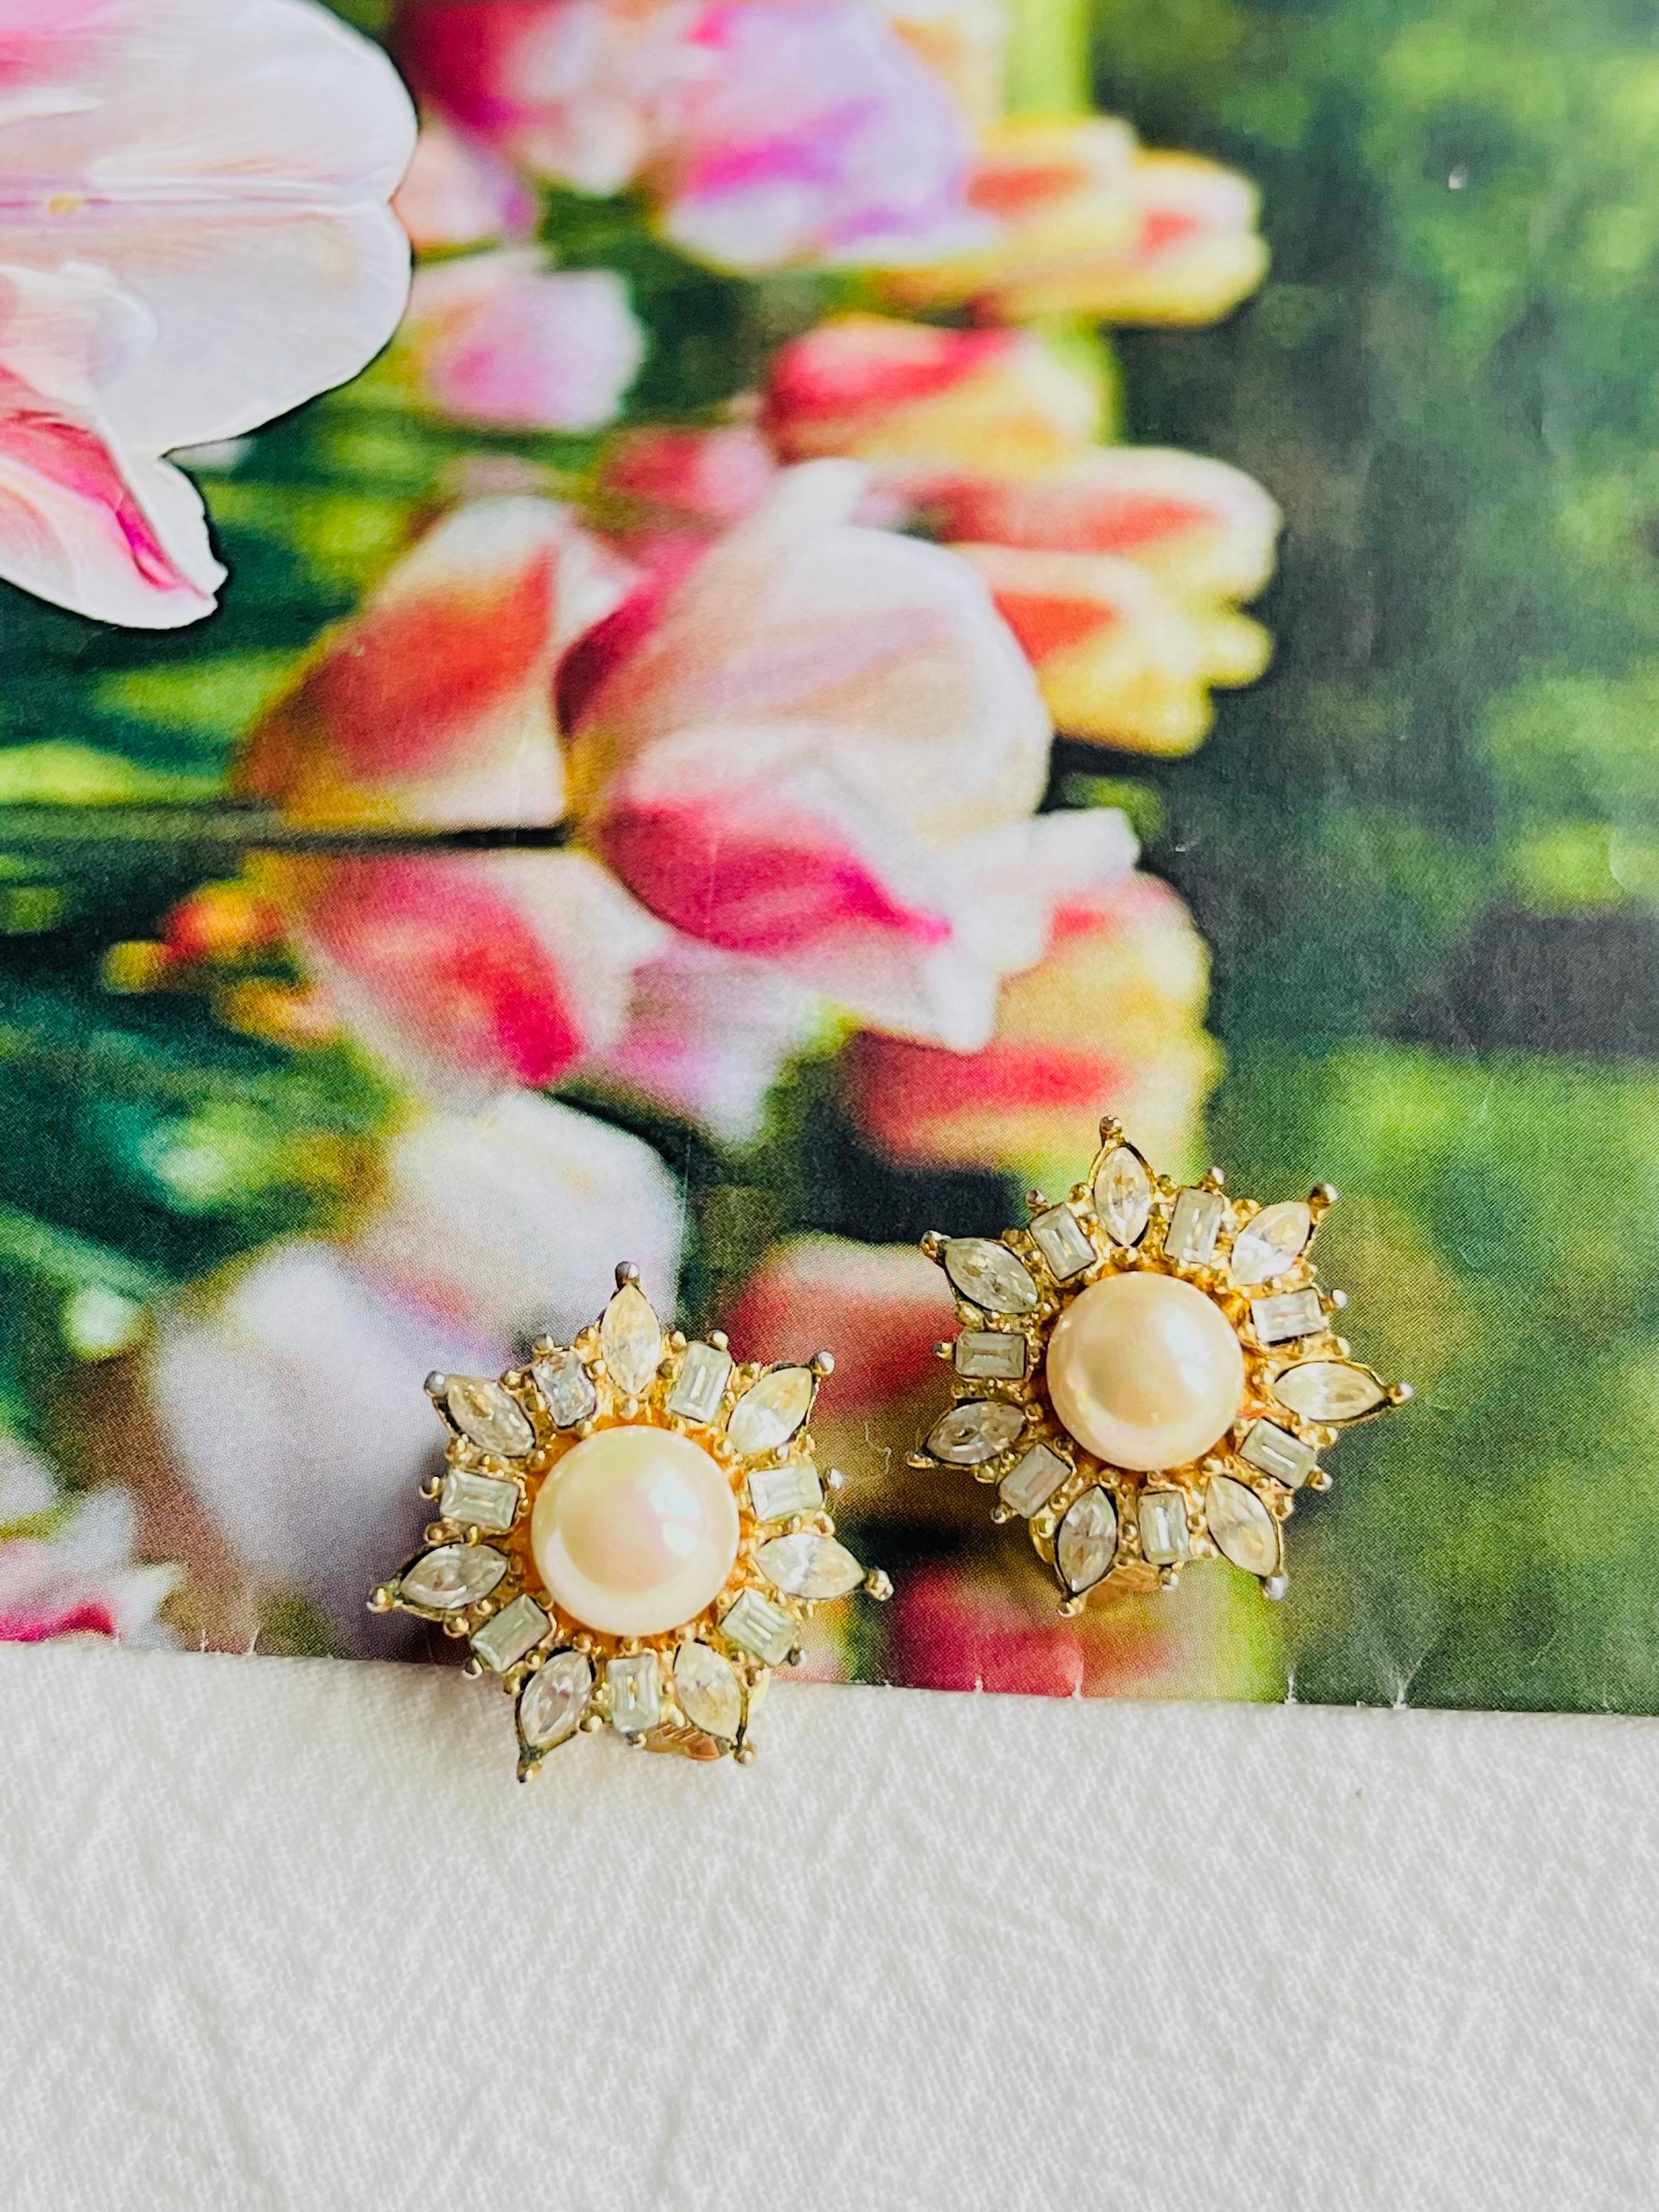 Christian Dior Vintage 1980er Jahre strahlende Blume Schneeflocke weiße Perlen Kristalle Clip Ohrringe, vergoldet

Sehr guter Zustand. Einige leichte Kratzer und Farbverluste, kaum wahrnehmbar. 100% echt.

Ein sehr schönes Paar Ohrringe von Chr.